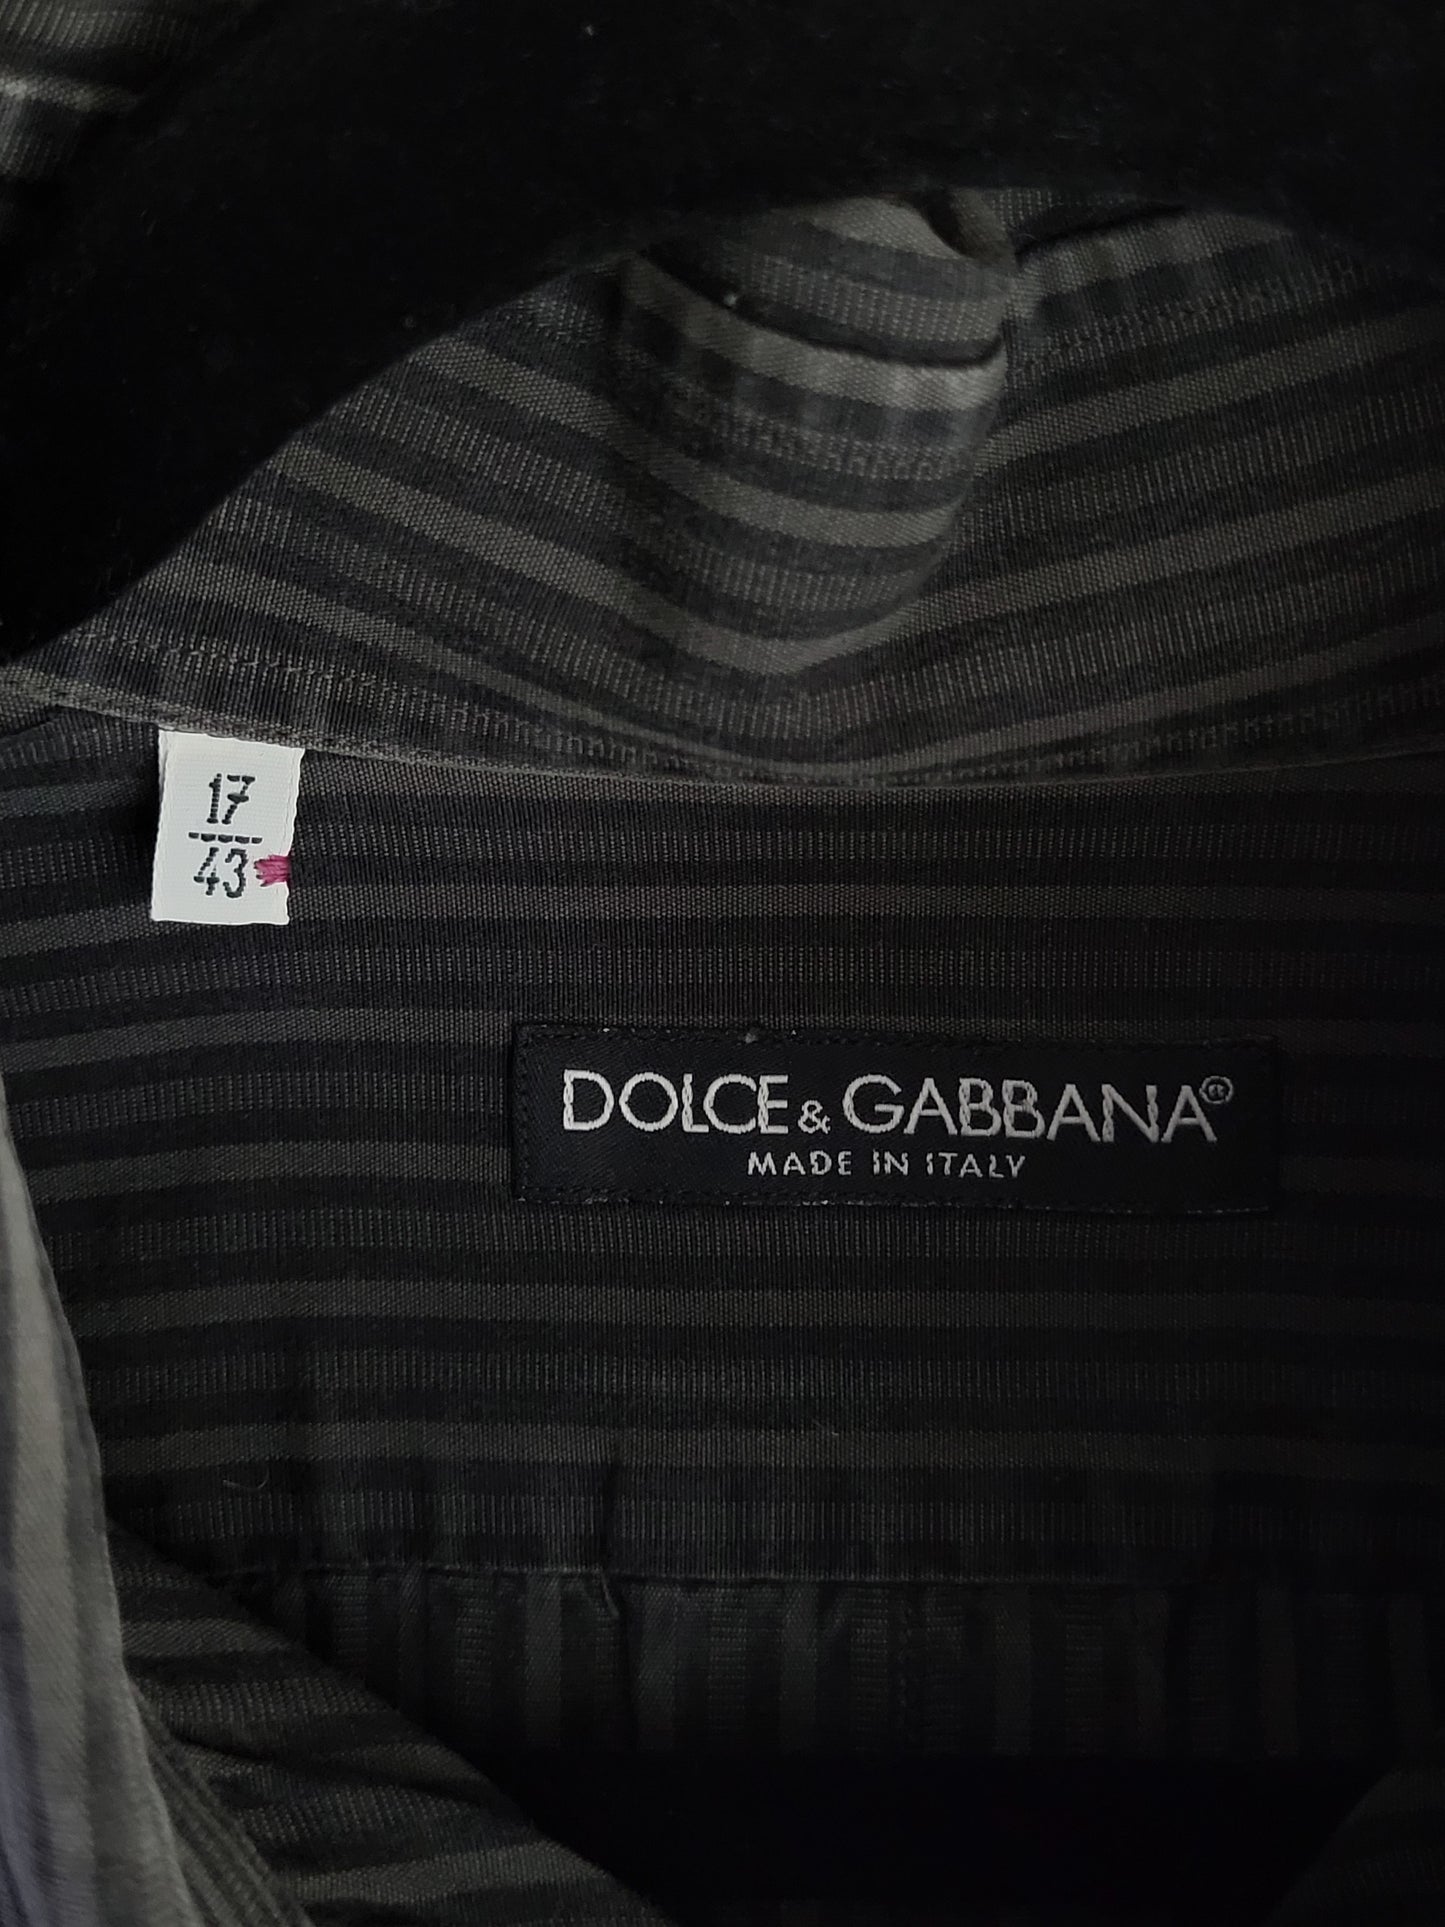 Dolce & Gabbana - Hemd - Streifen - Anthrazit - Herren - L/XL